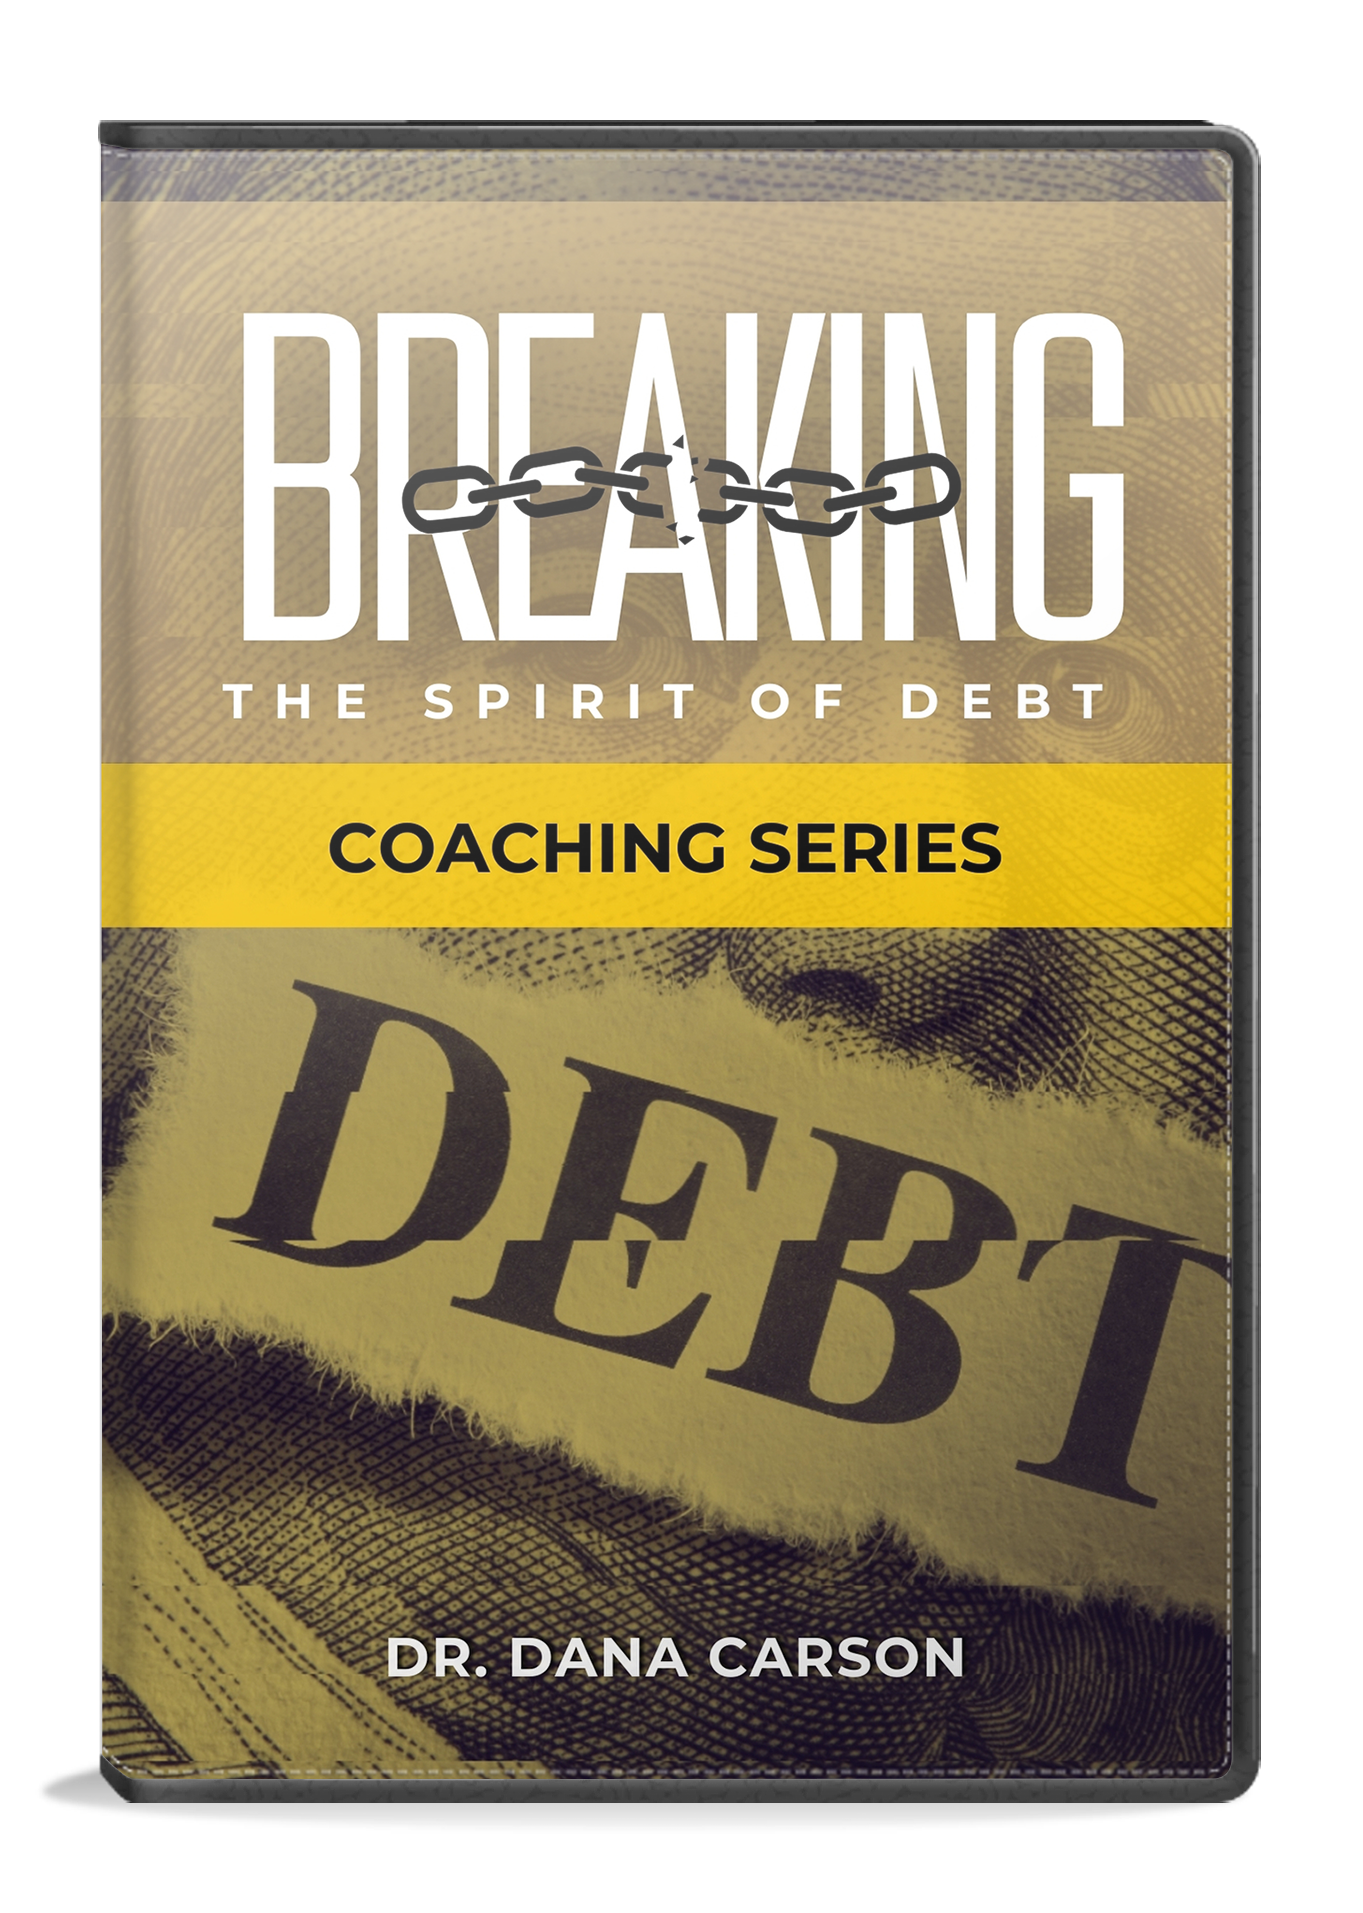 Breaking the Spirit of Debt Coaching Series